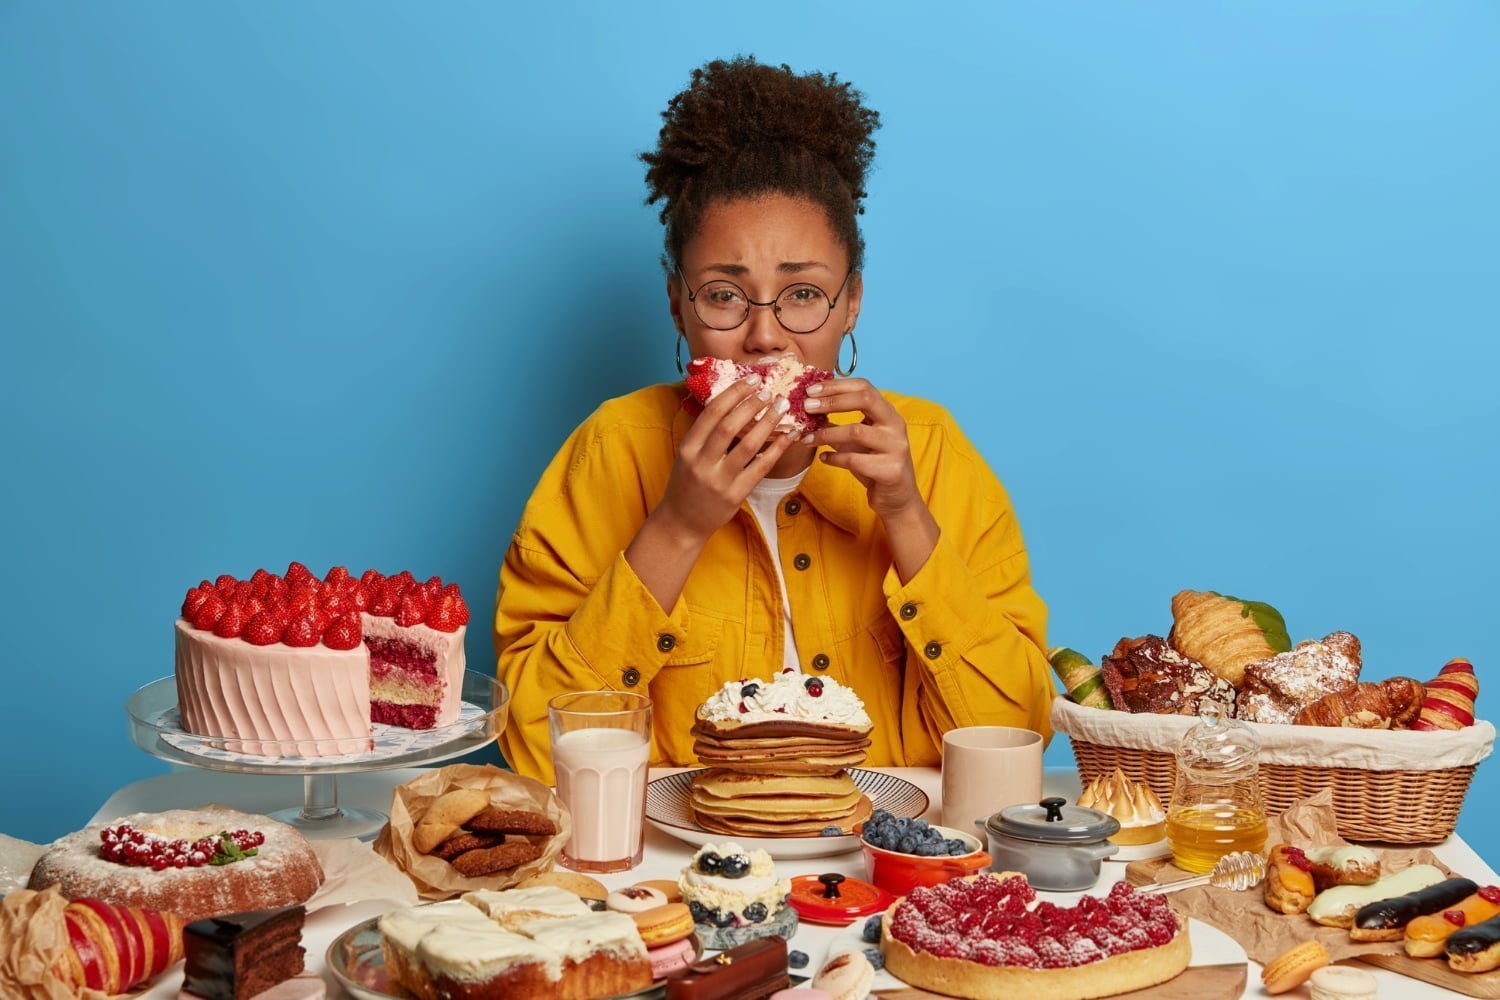 mujer comiendo en exceso por hambre emocional / desayuno / sobrepeso / antojos de azúcar antes de tu período